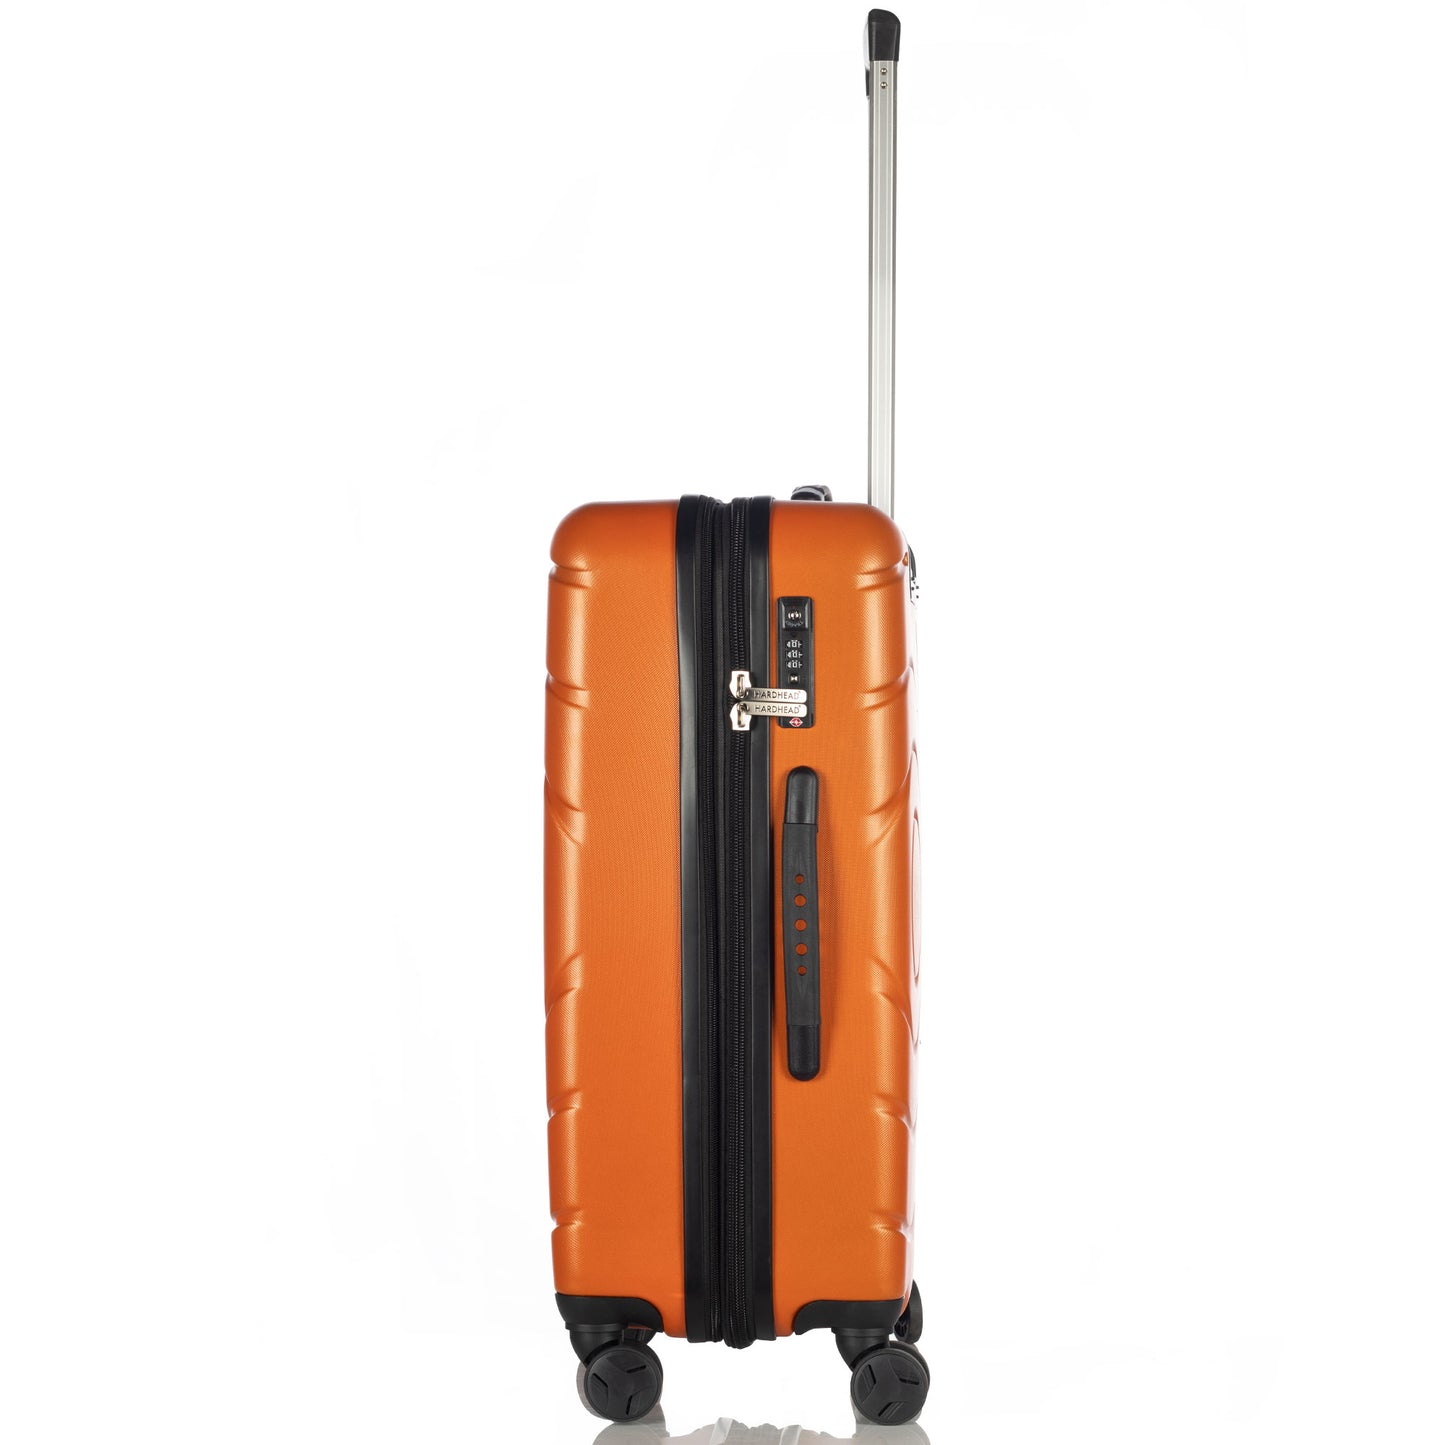 Hardhead Luggage (20/24/28") Eco Hardside Travel Suitcase with 4 360 Wheels Lock Included, Orange